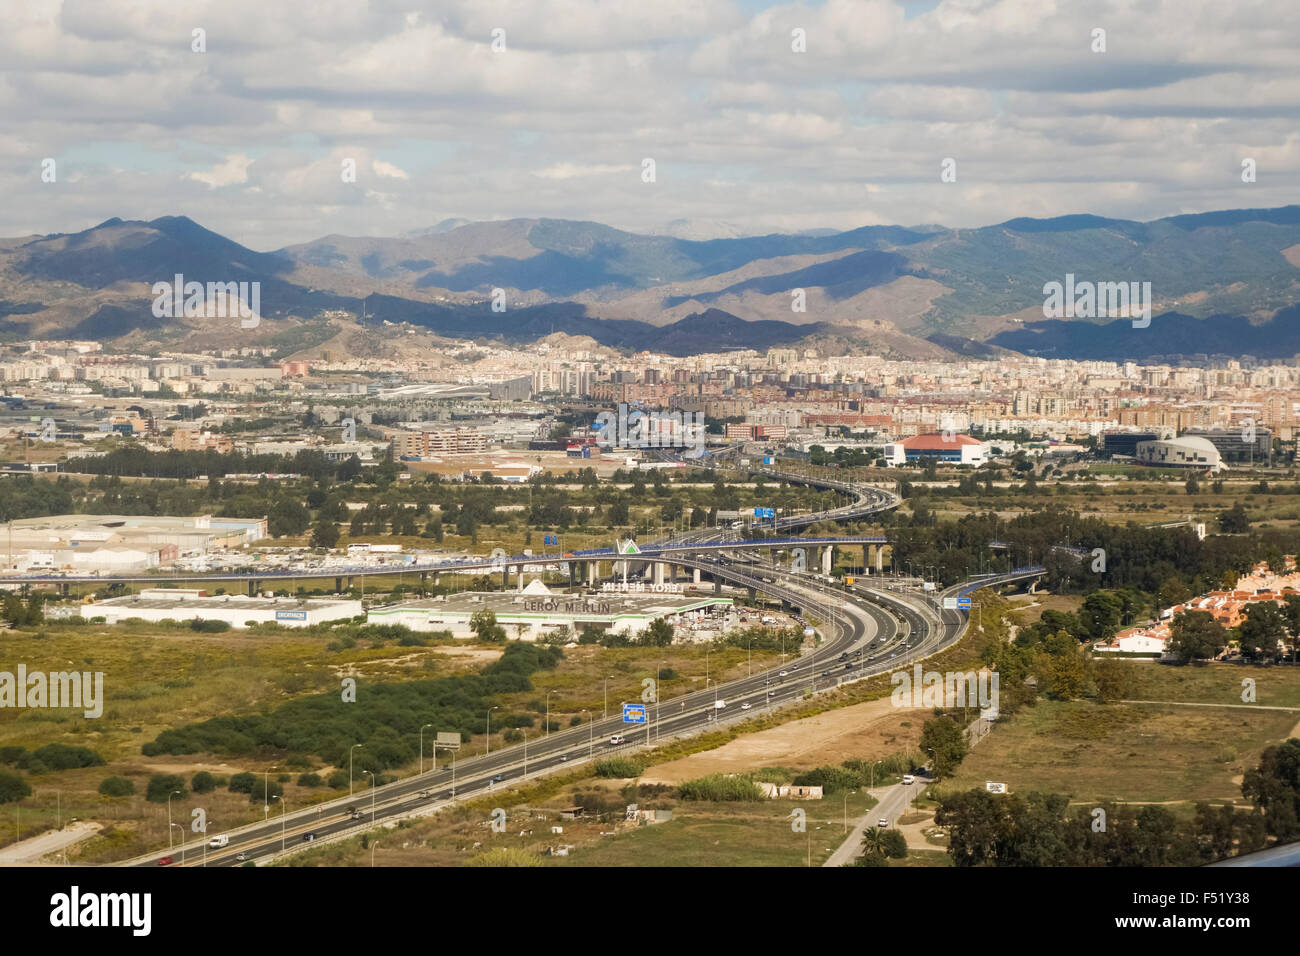 Vista aerea 4 lane Autostrada costiera A7, Costa del Sol, N340, proveniente da Malaga, Spagna. Foto Stock